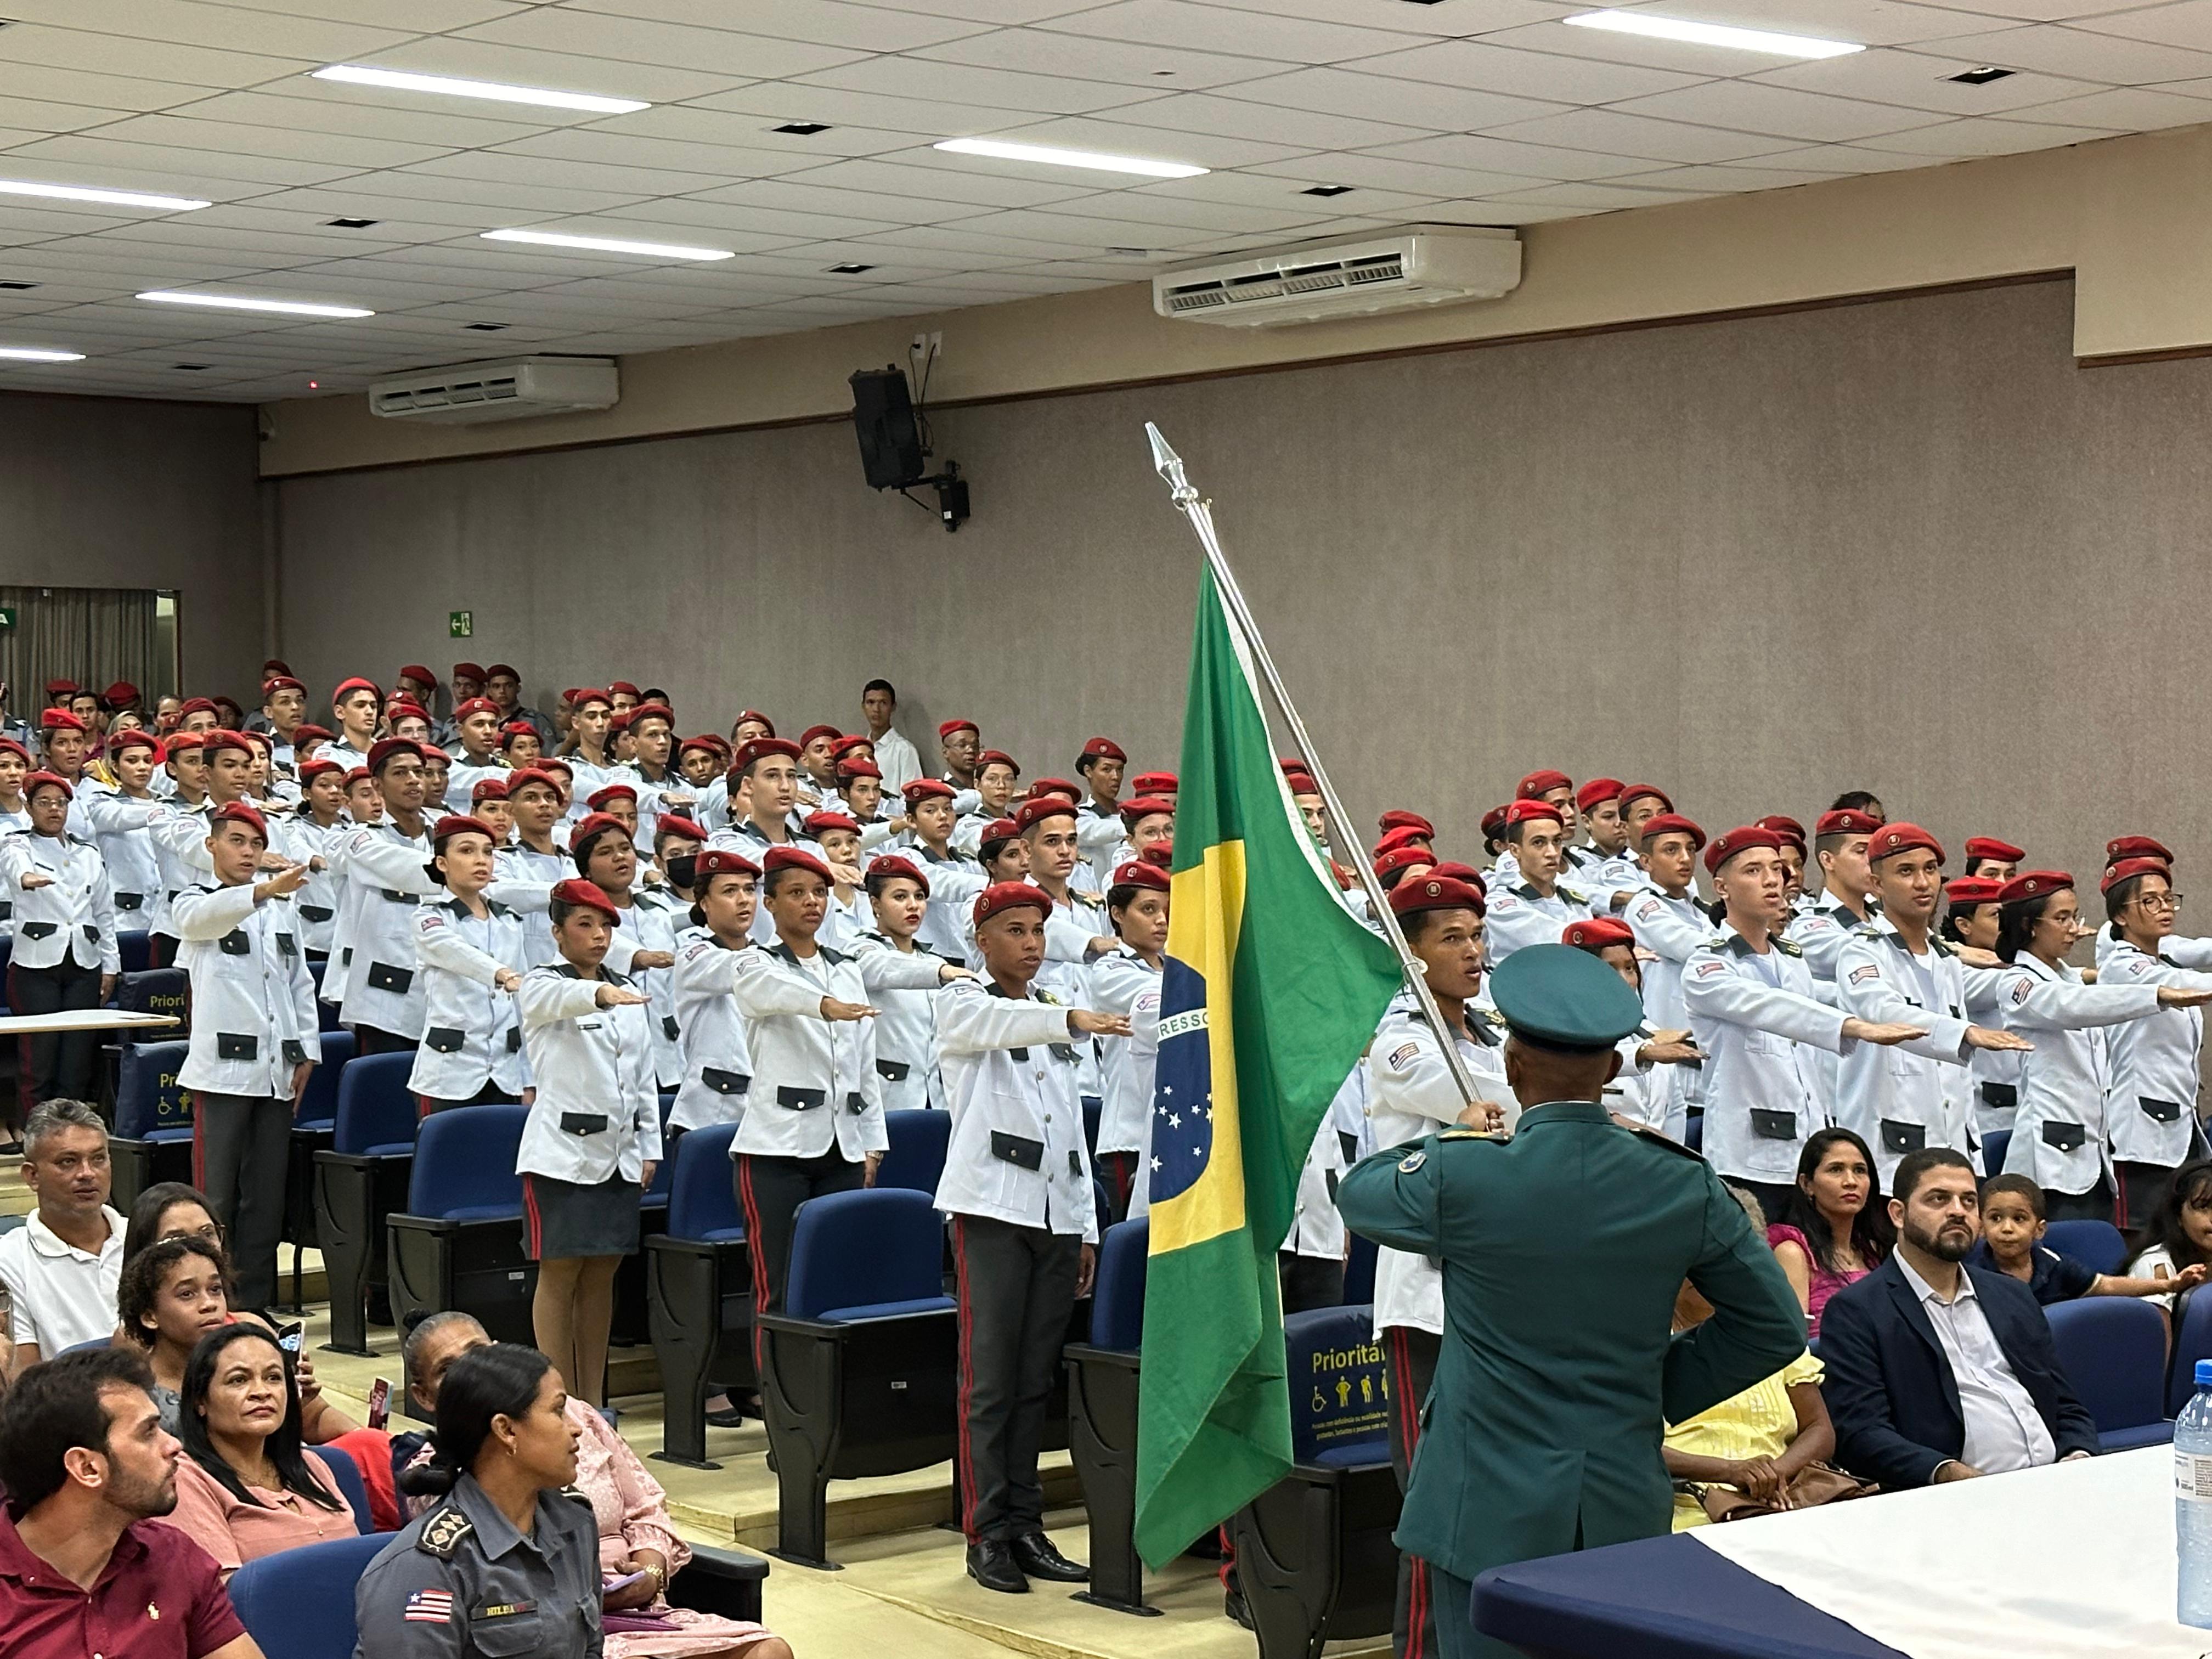 UniFacema disponibiliza seus espaços físicos para a Colação de Grau do Colégio Militar Tiradentes IV